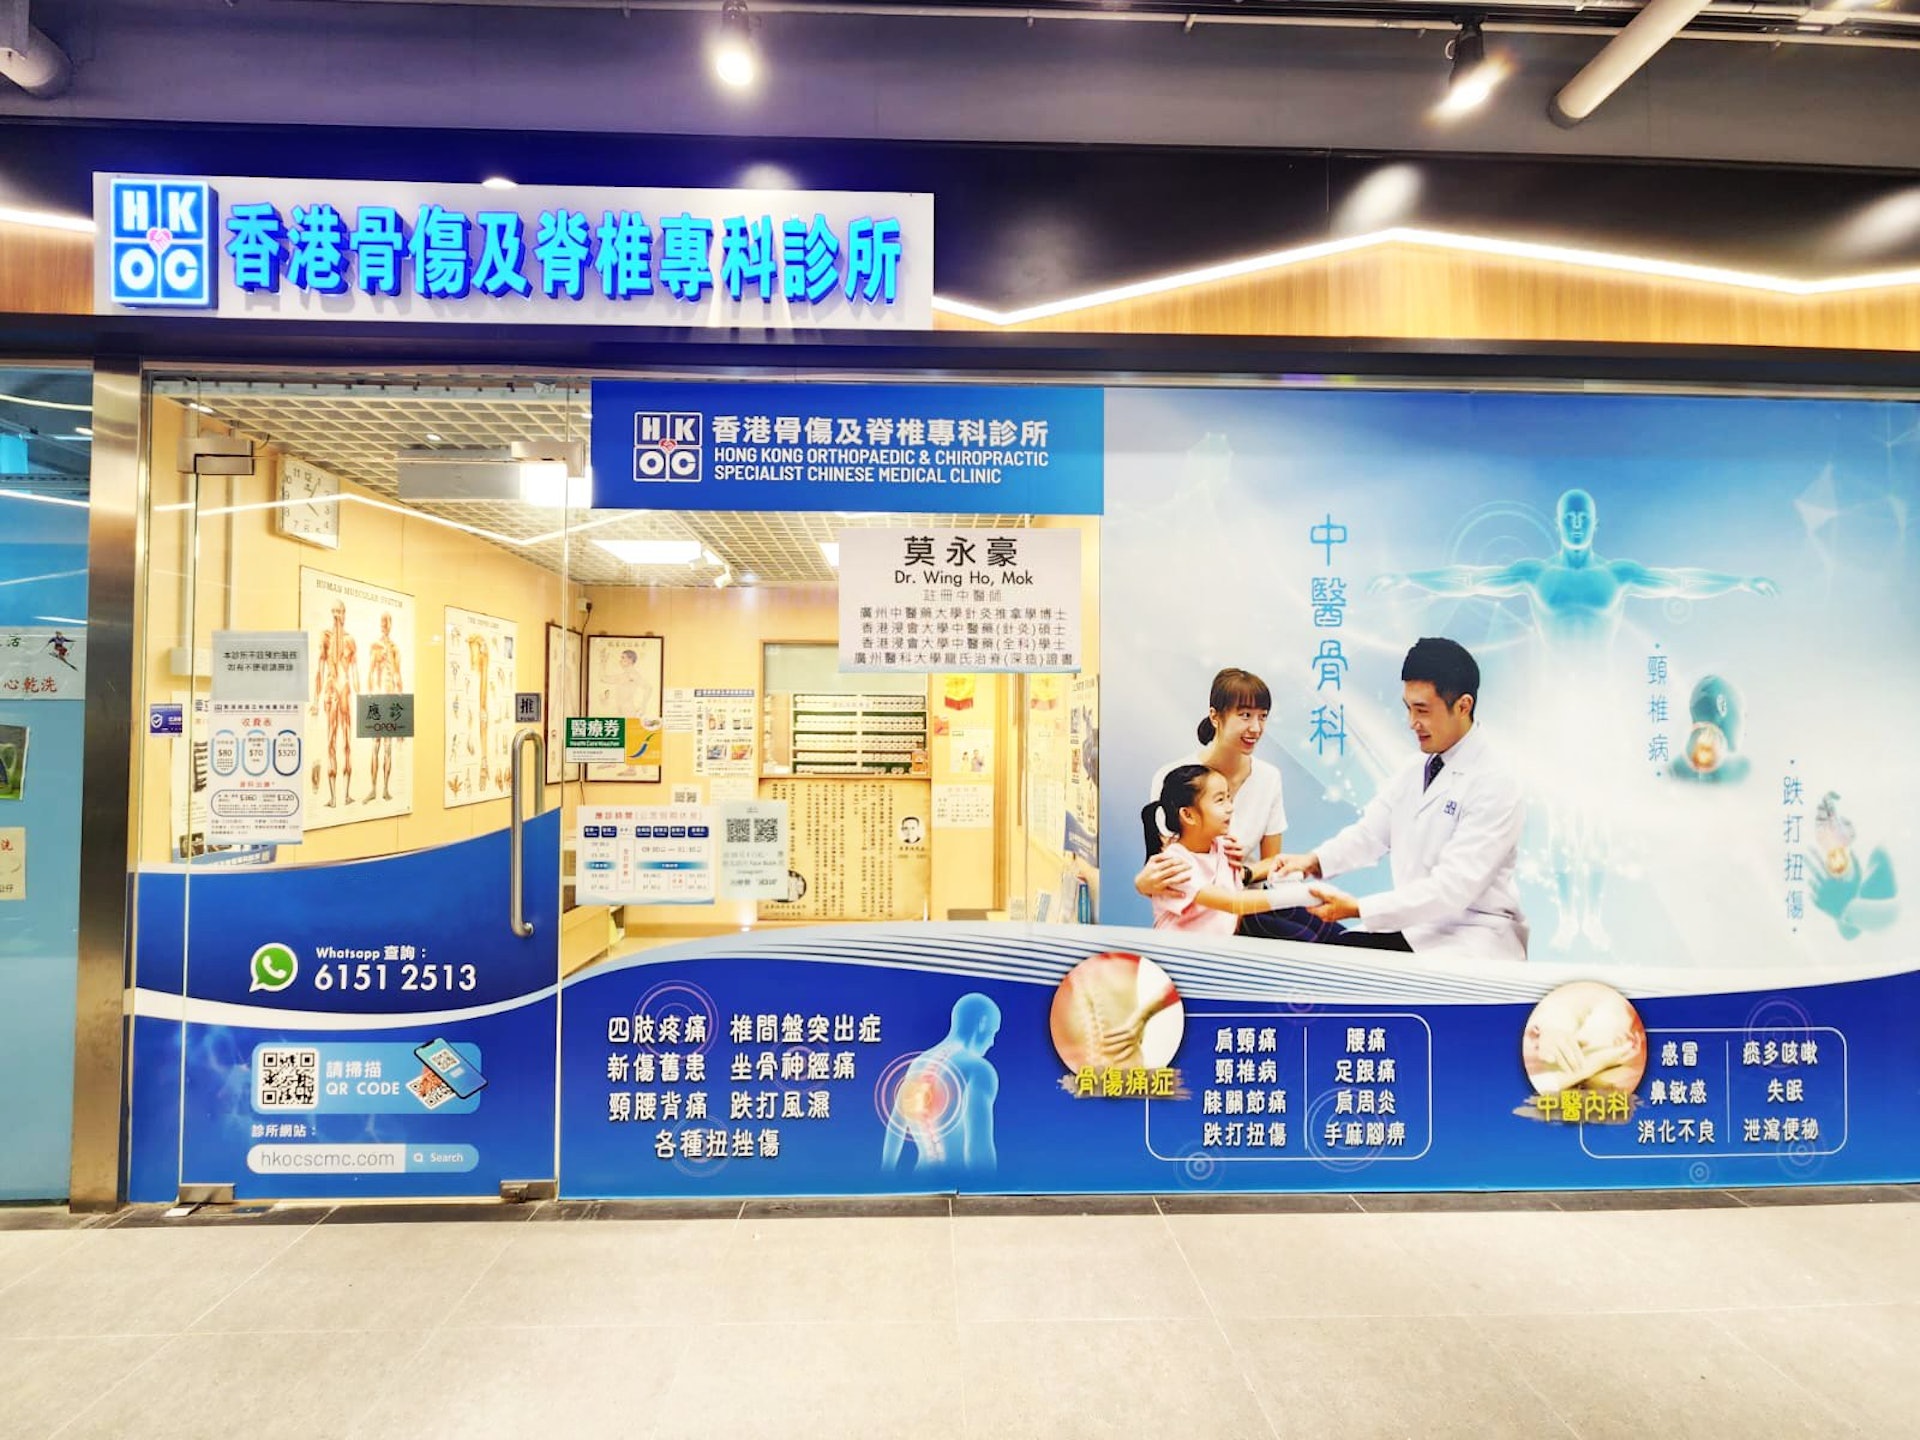 香港骨傷及脊椎專科診所分店遍佈全港。